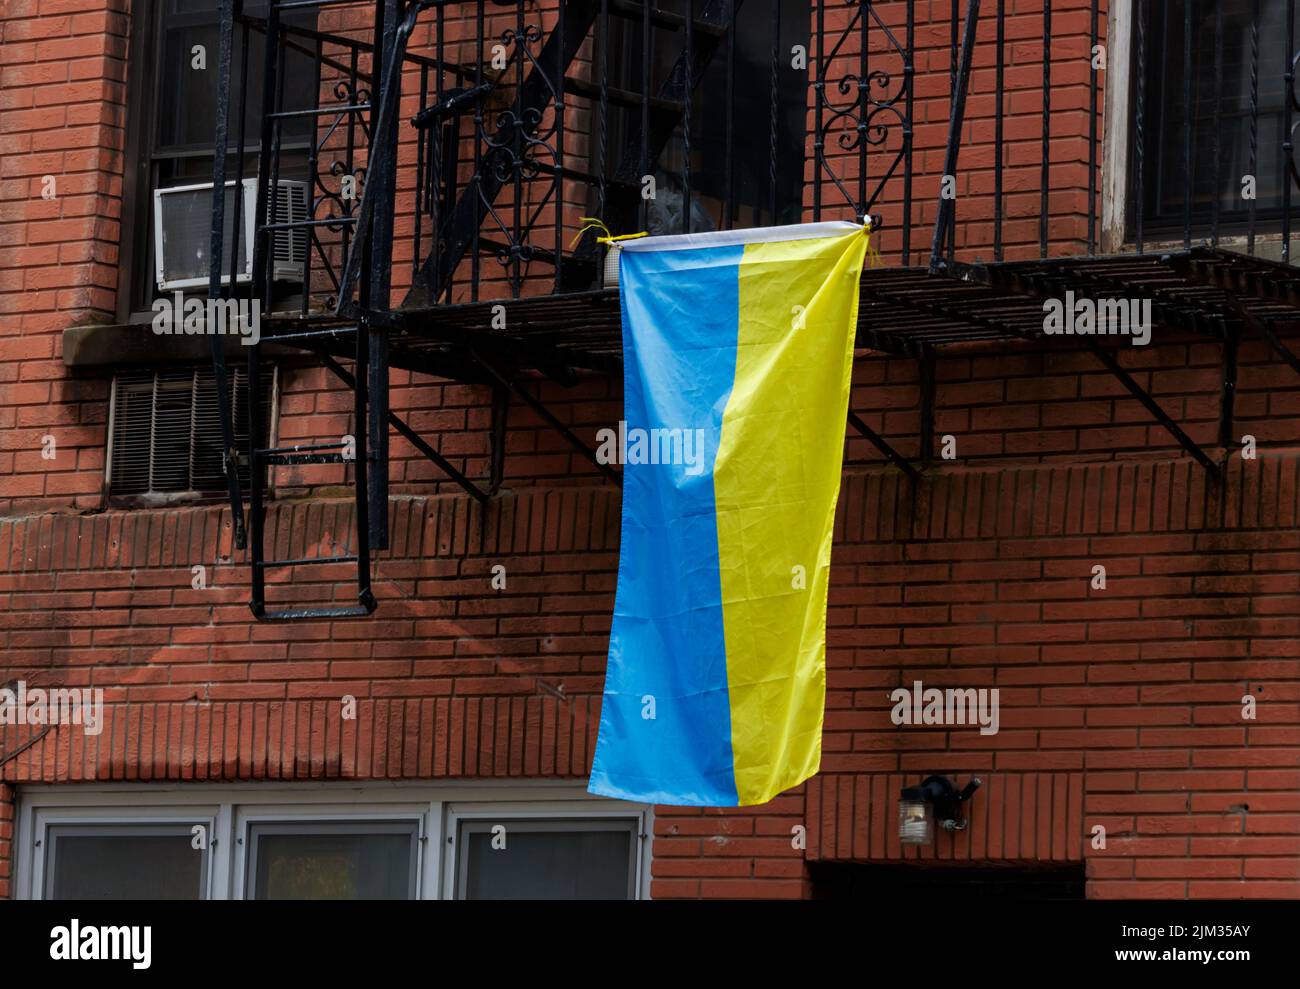 Una bandera ucraniana que cuelga de un escape de incendios frente a un edificio de ladrillo rojo en la ciudad de Nueva york, lo que demuestra solidaridad con Ucrania Foto de stock